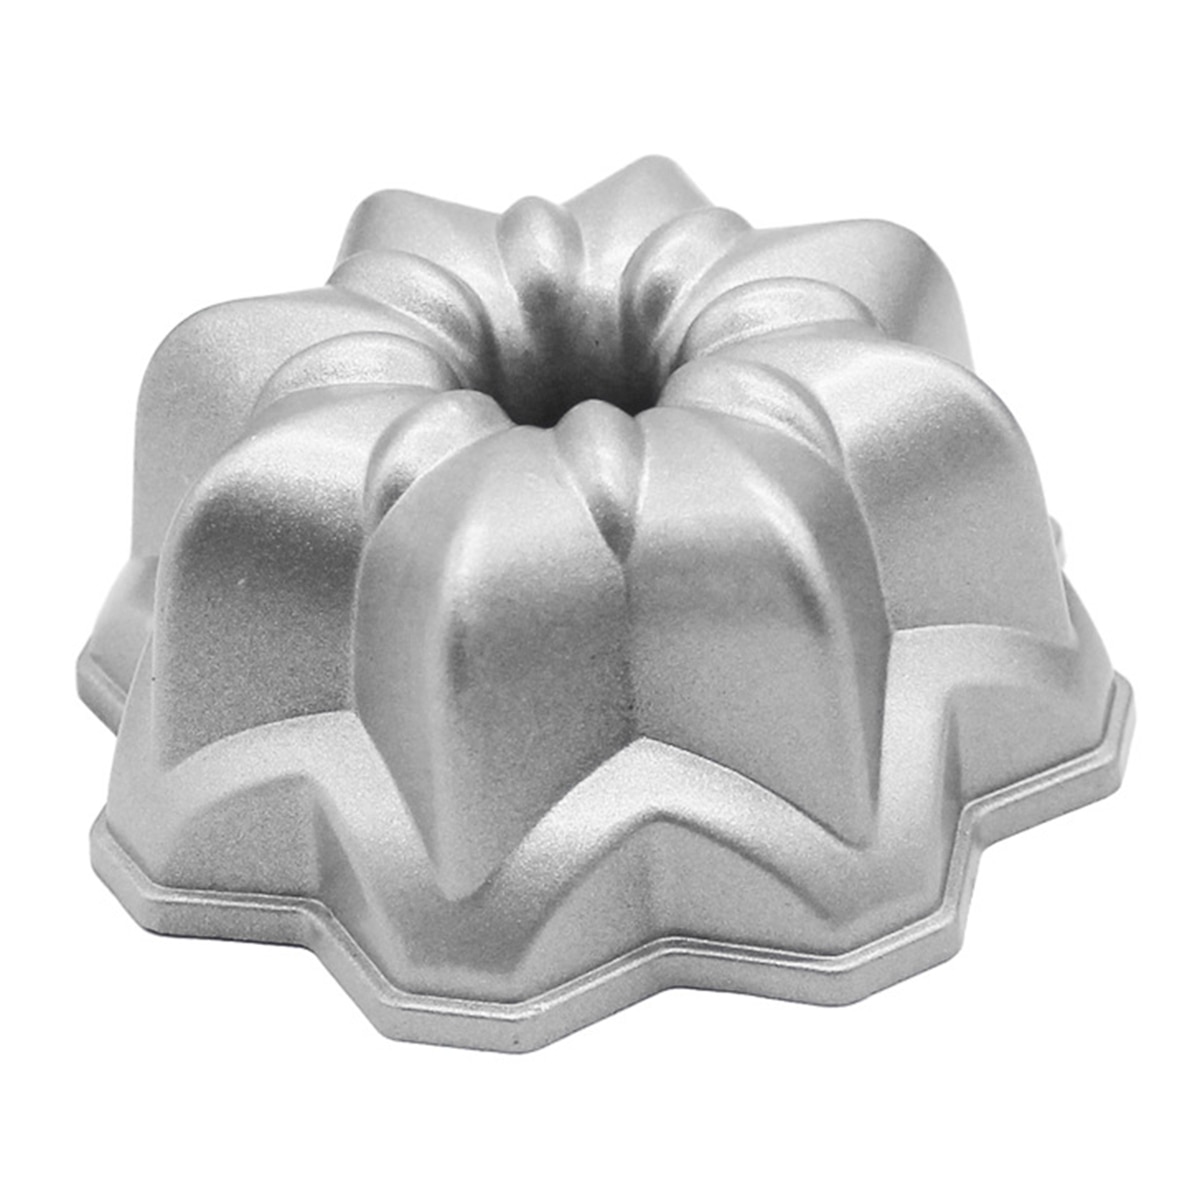 4Inch Cake Pan Niet-klevende Gegoten Aluminium Cakevorm Bloem Vormige Bakvormen Lelie Bloem Vormige , maatregelen 11x11x4.6cm